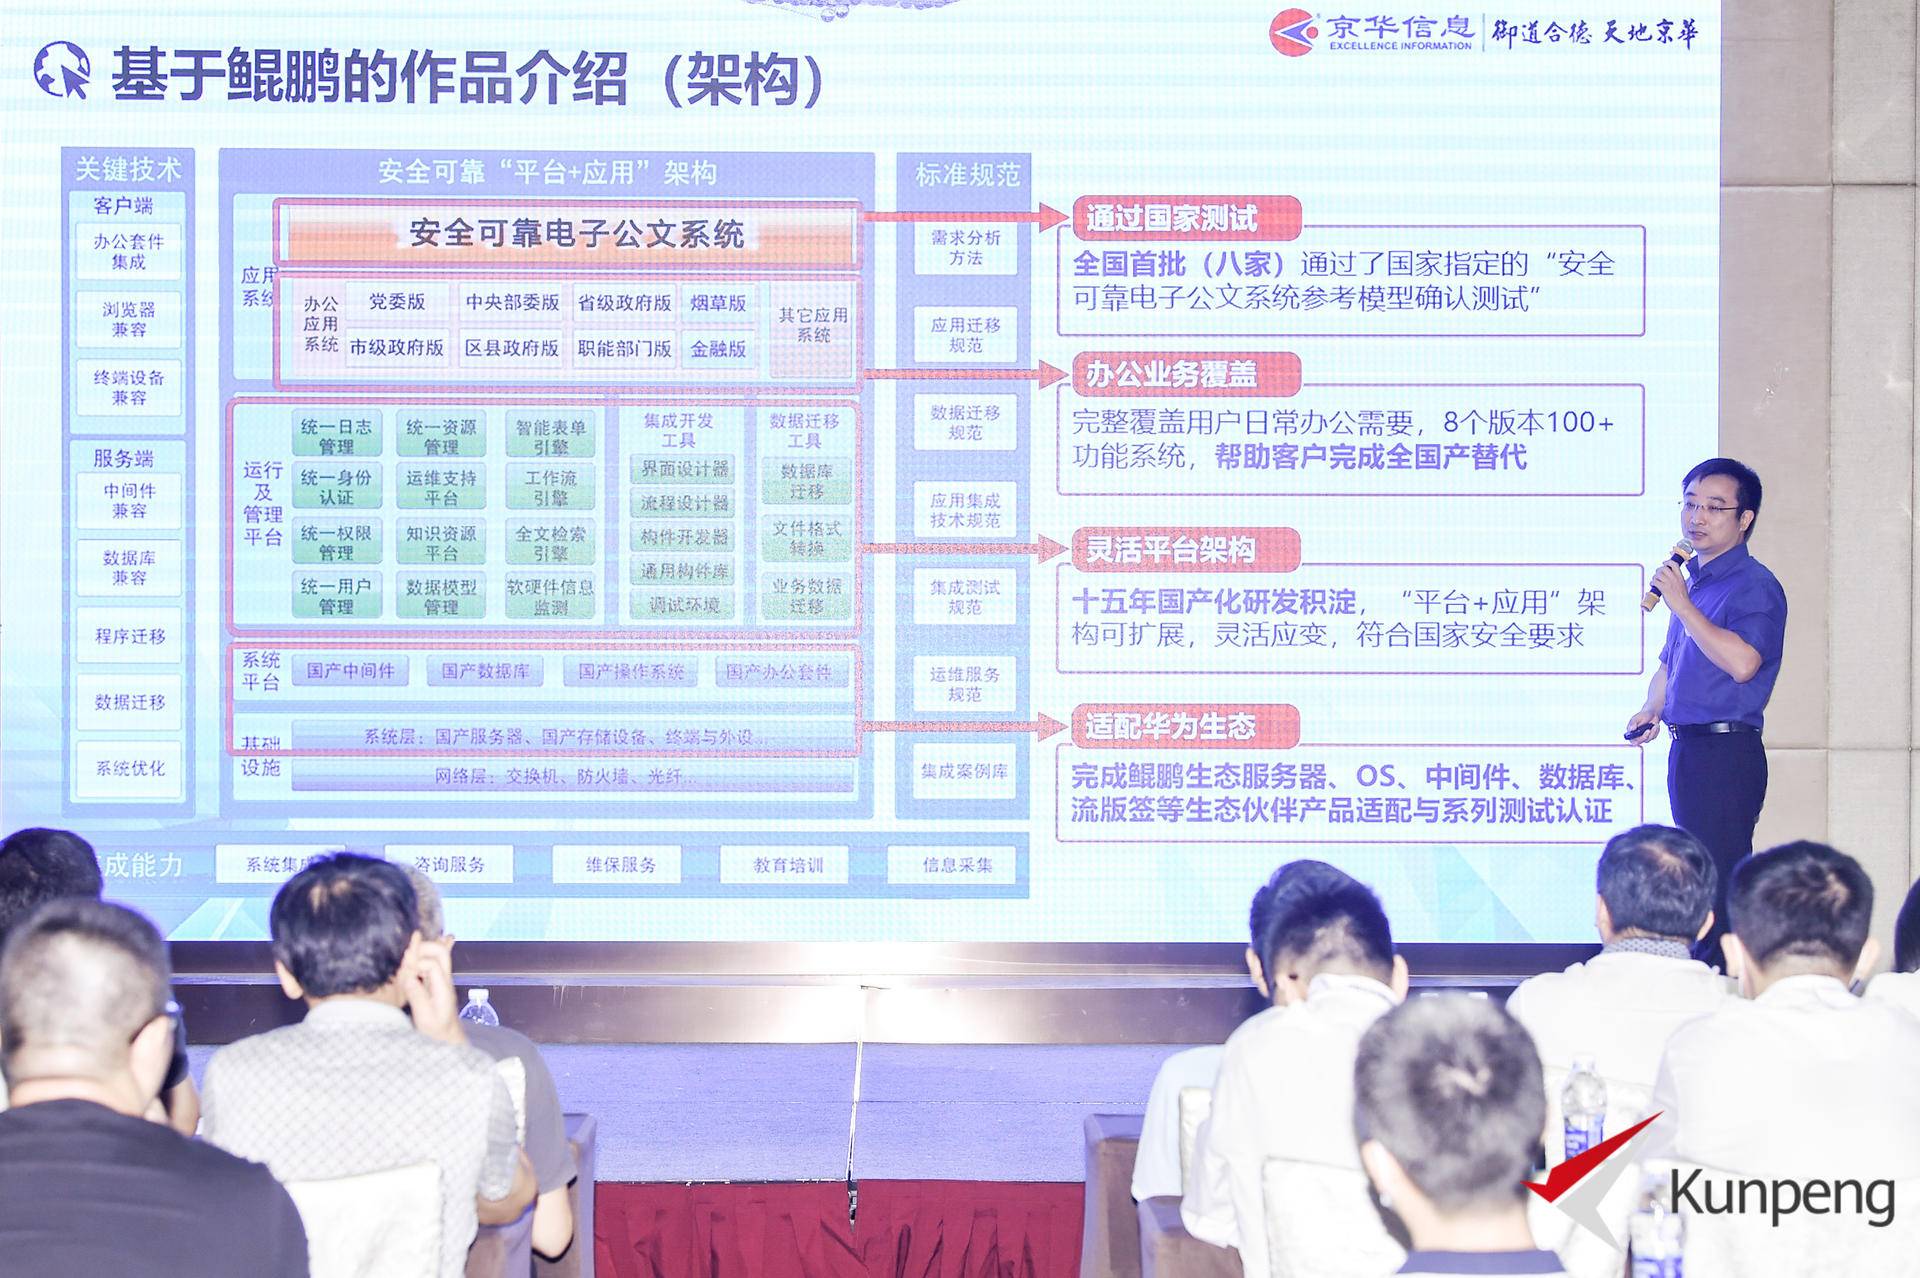 见证开发者的力量“广州鲲鹏创新大赛总决赛”一等奖作品展示